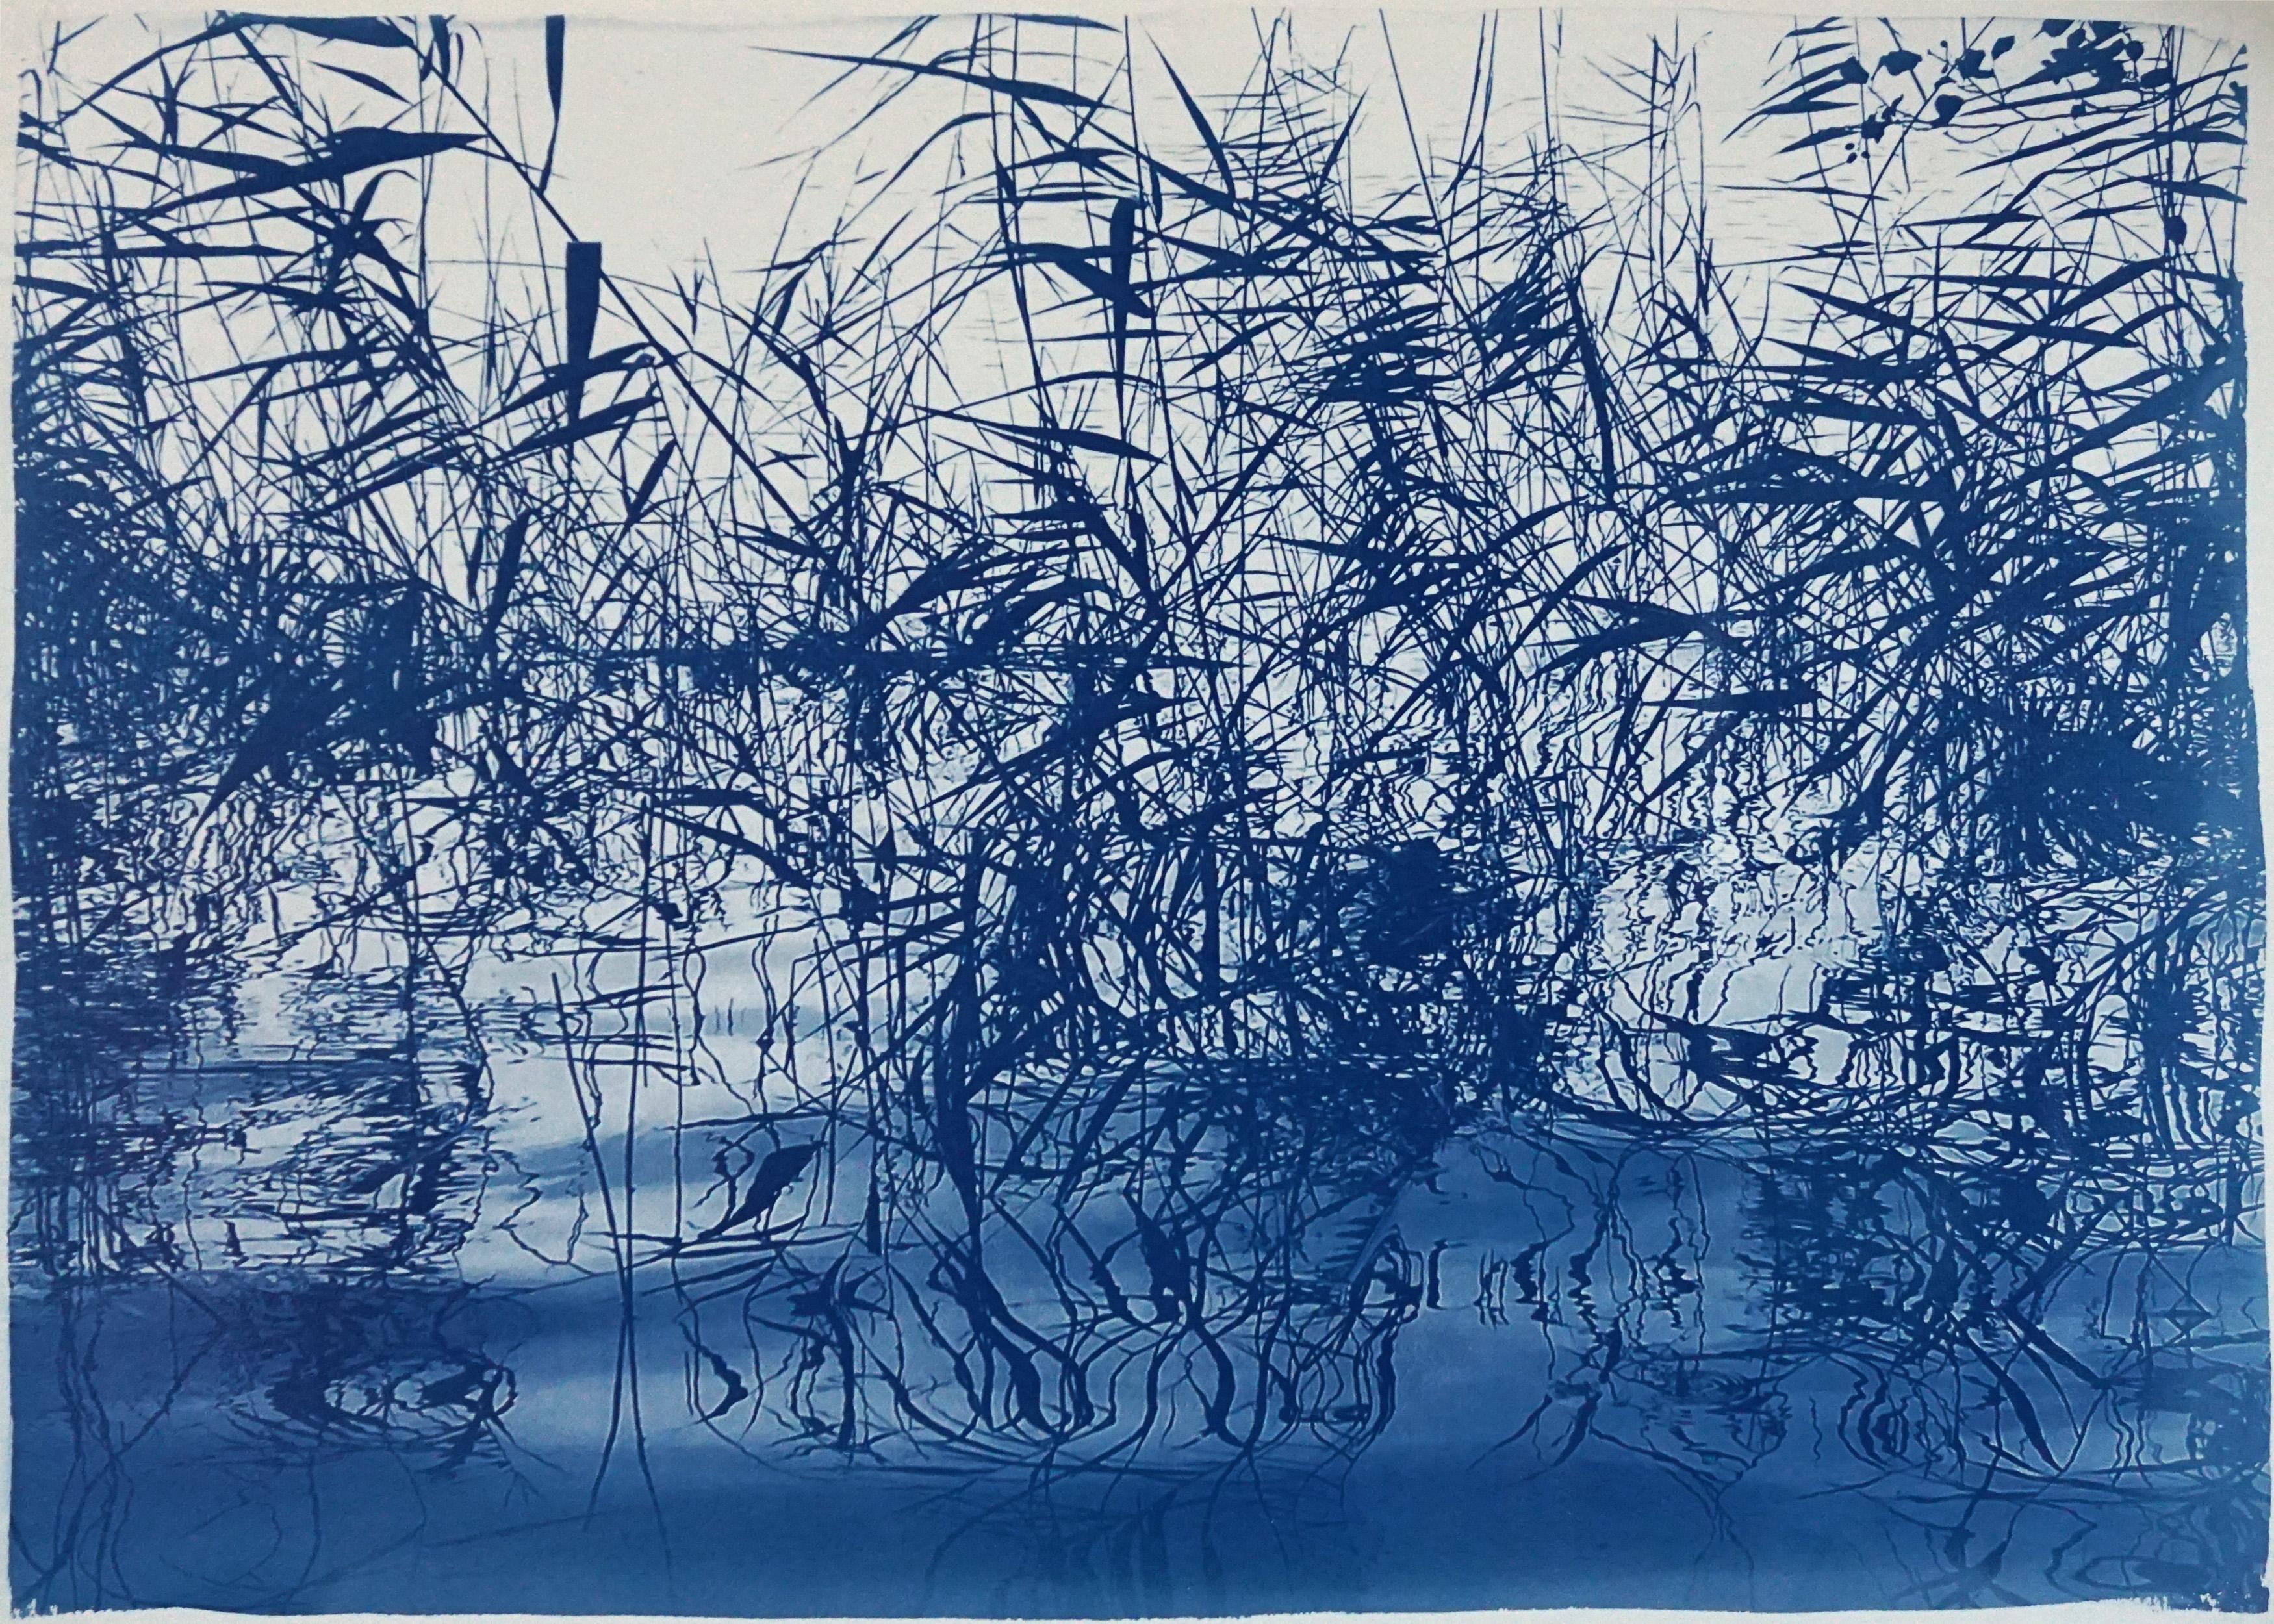 Kind of Cyan Landscape Art - Mystic Louisiana Marsh, Cyanotype on Watercolor Paper, 100x70cm, Blue Landscape 